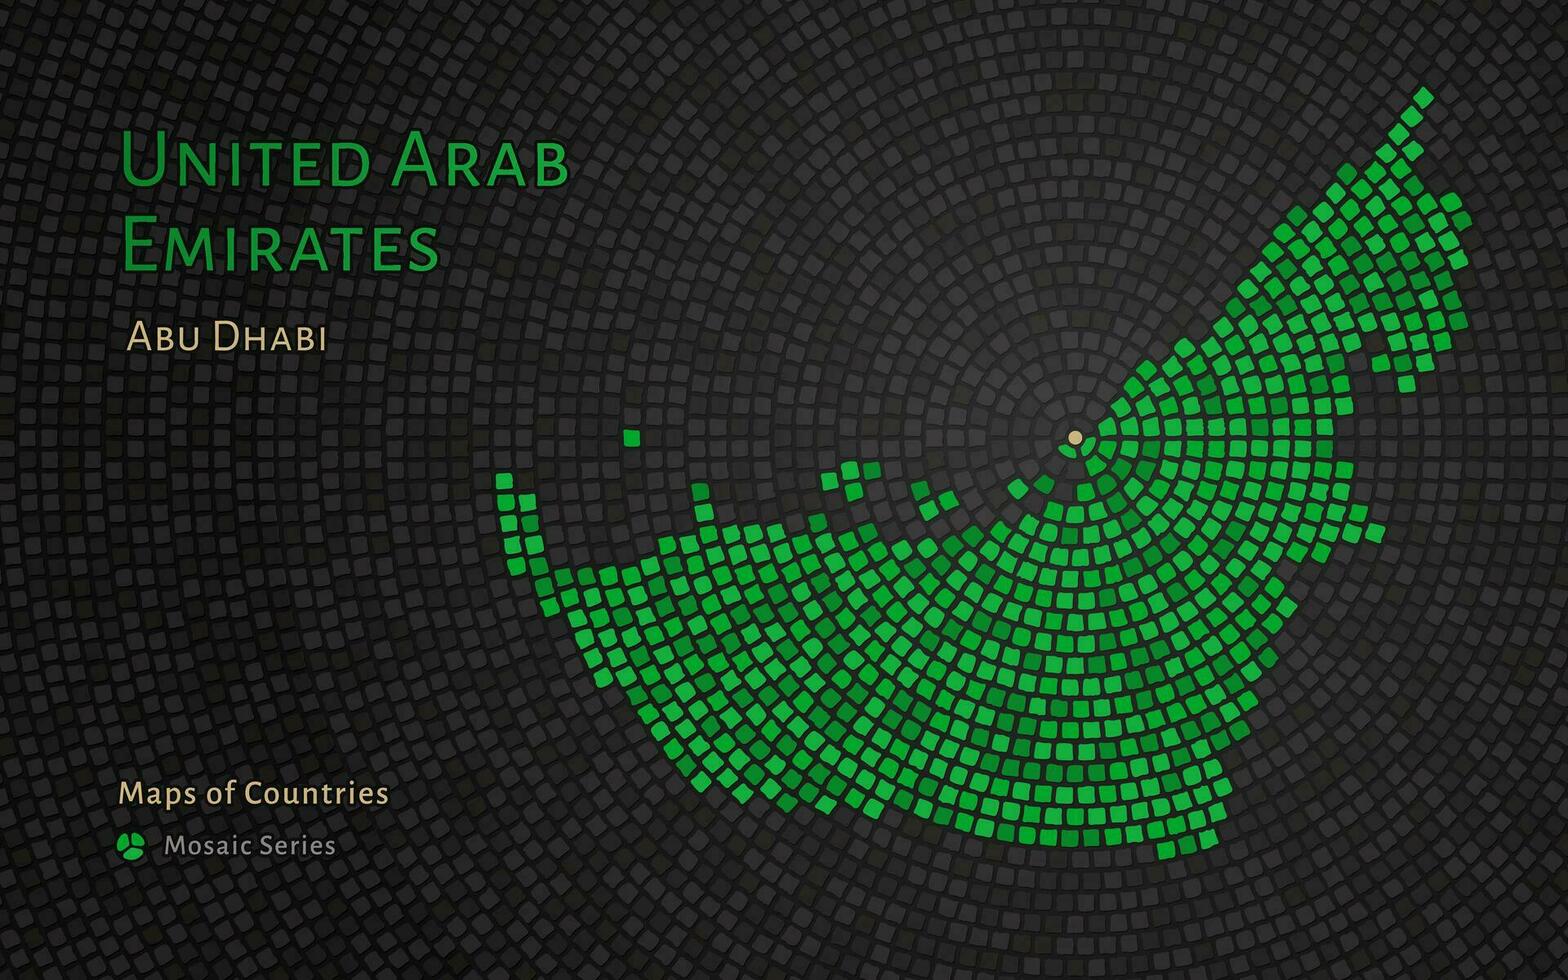 förenad arab emirates Karta med en huvudstad av abu dhabi visad i en mosaik- mönster vektor